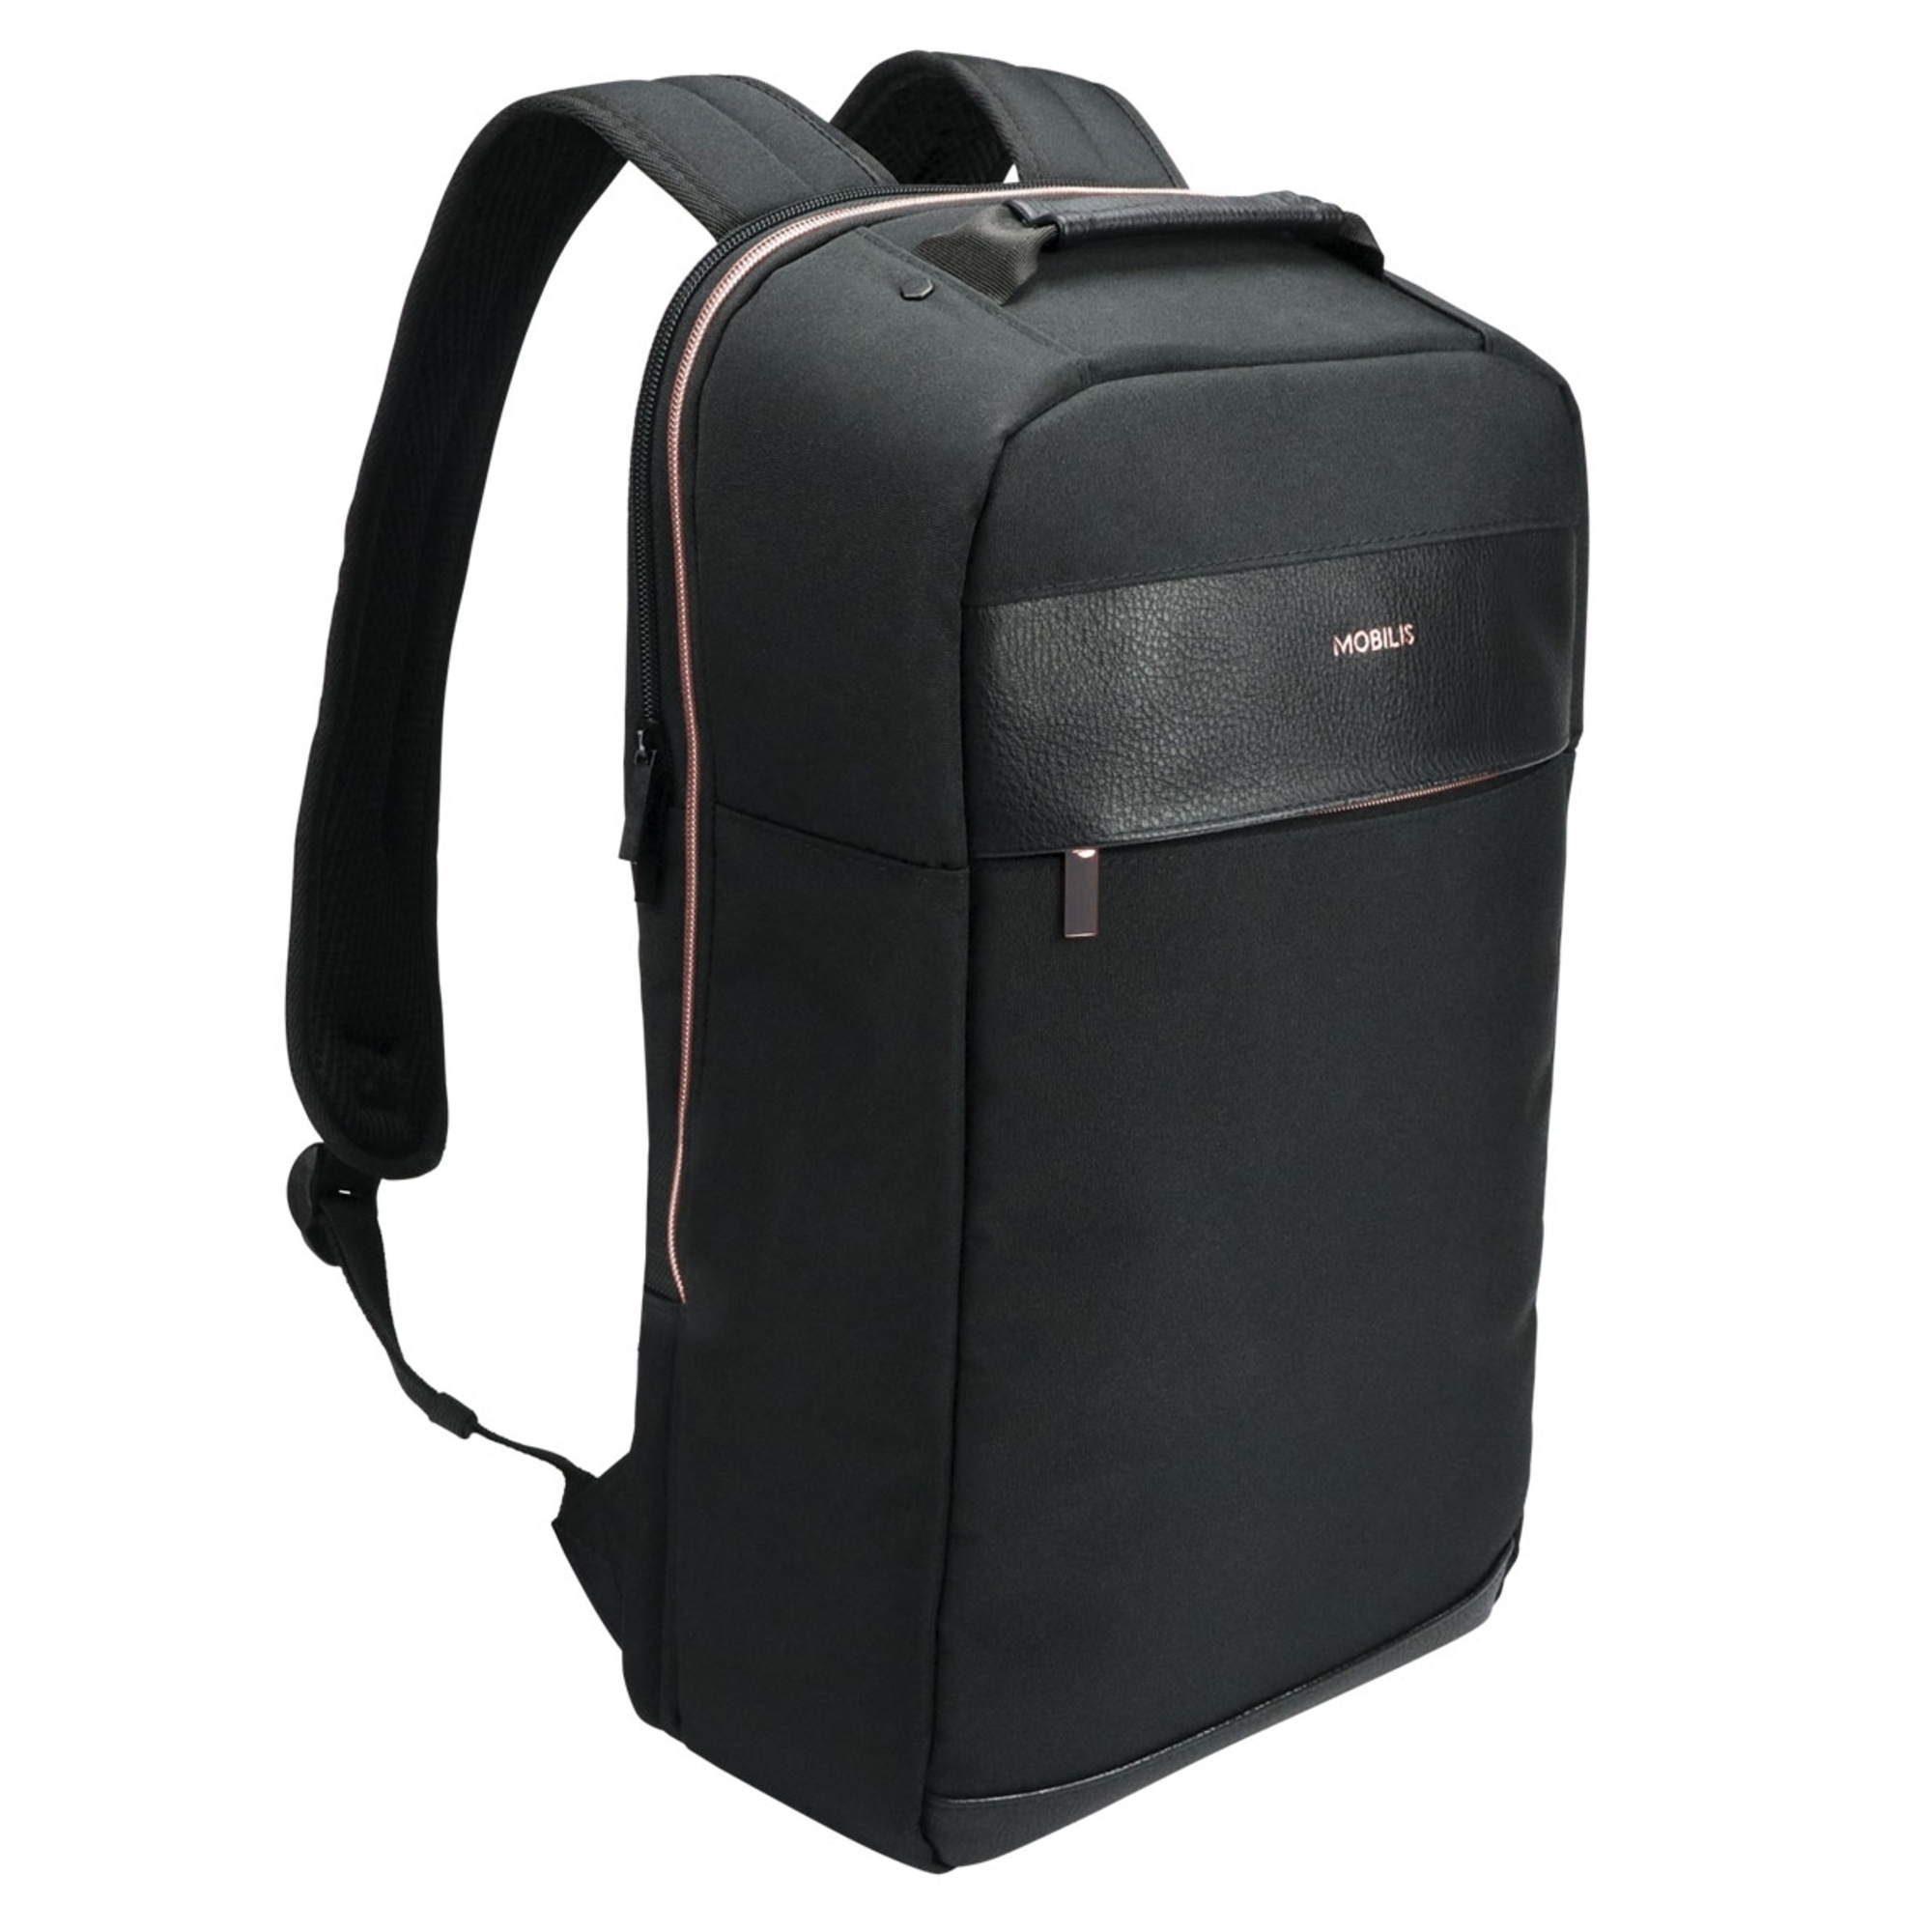 mobilis sac Ã  dos pour ordinateur portable - 14-15.6 - noir et or rose - neuf donna